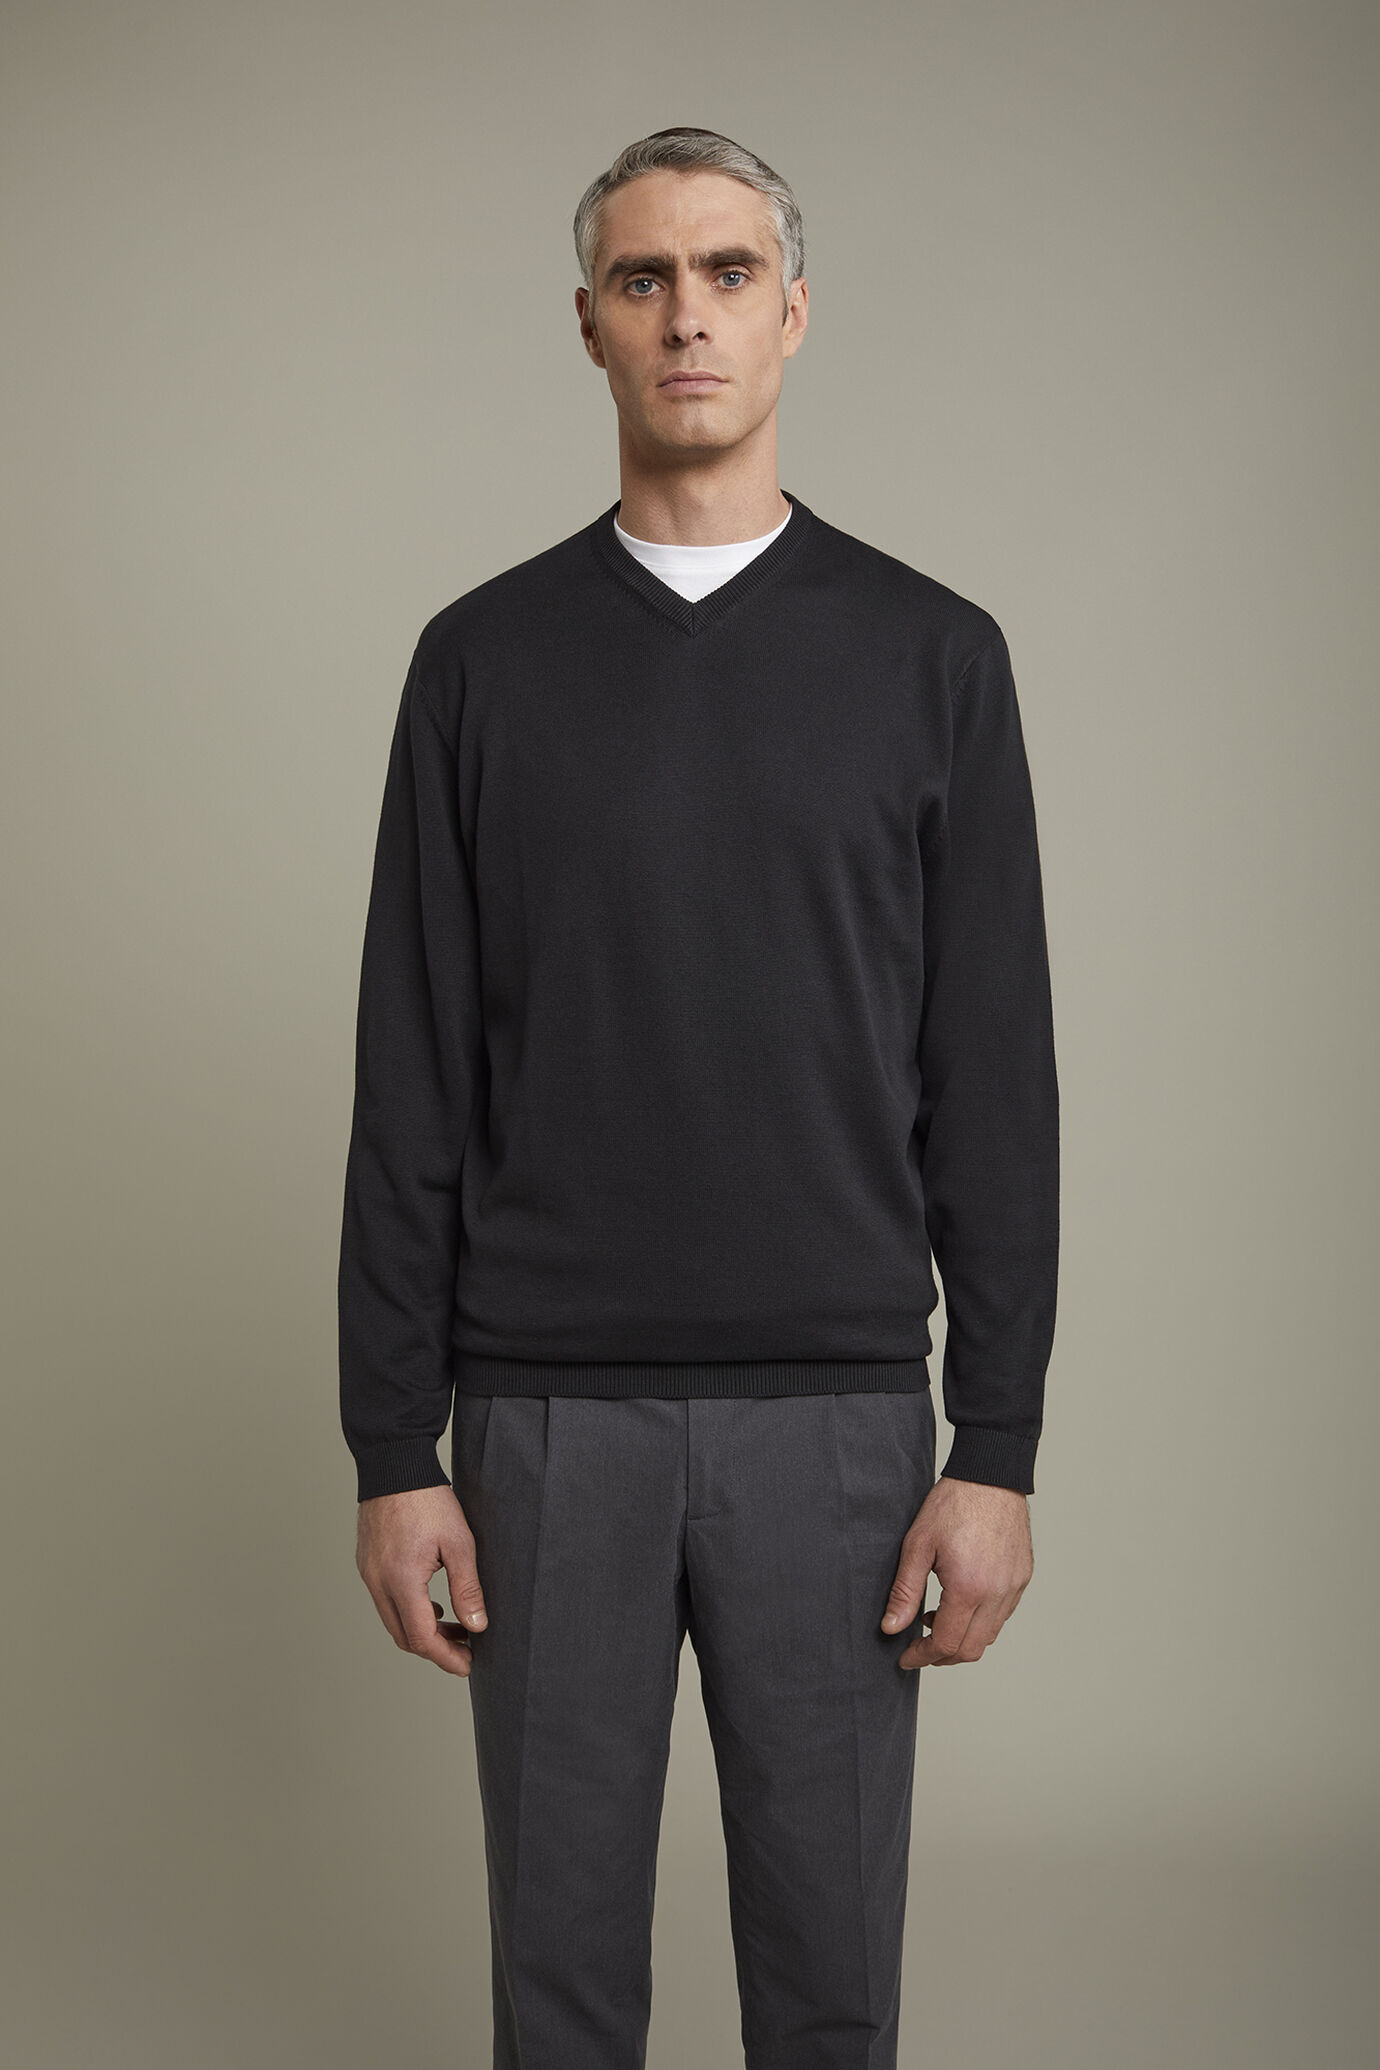 Men's v neck sweater 100% cotton regular fit image number 2